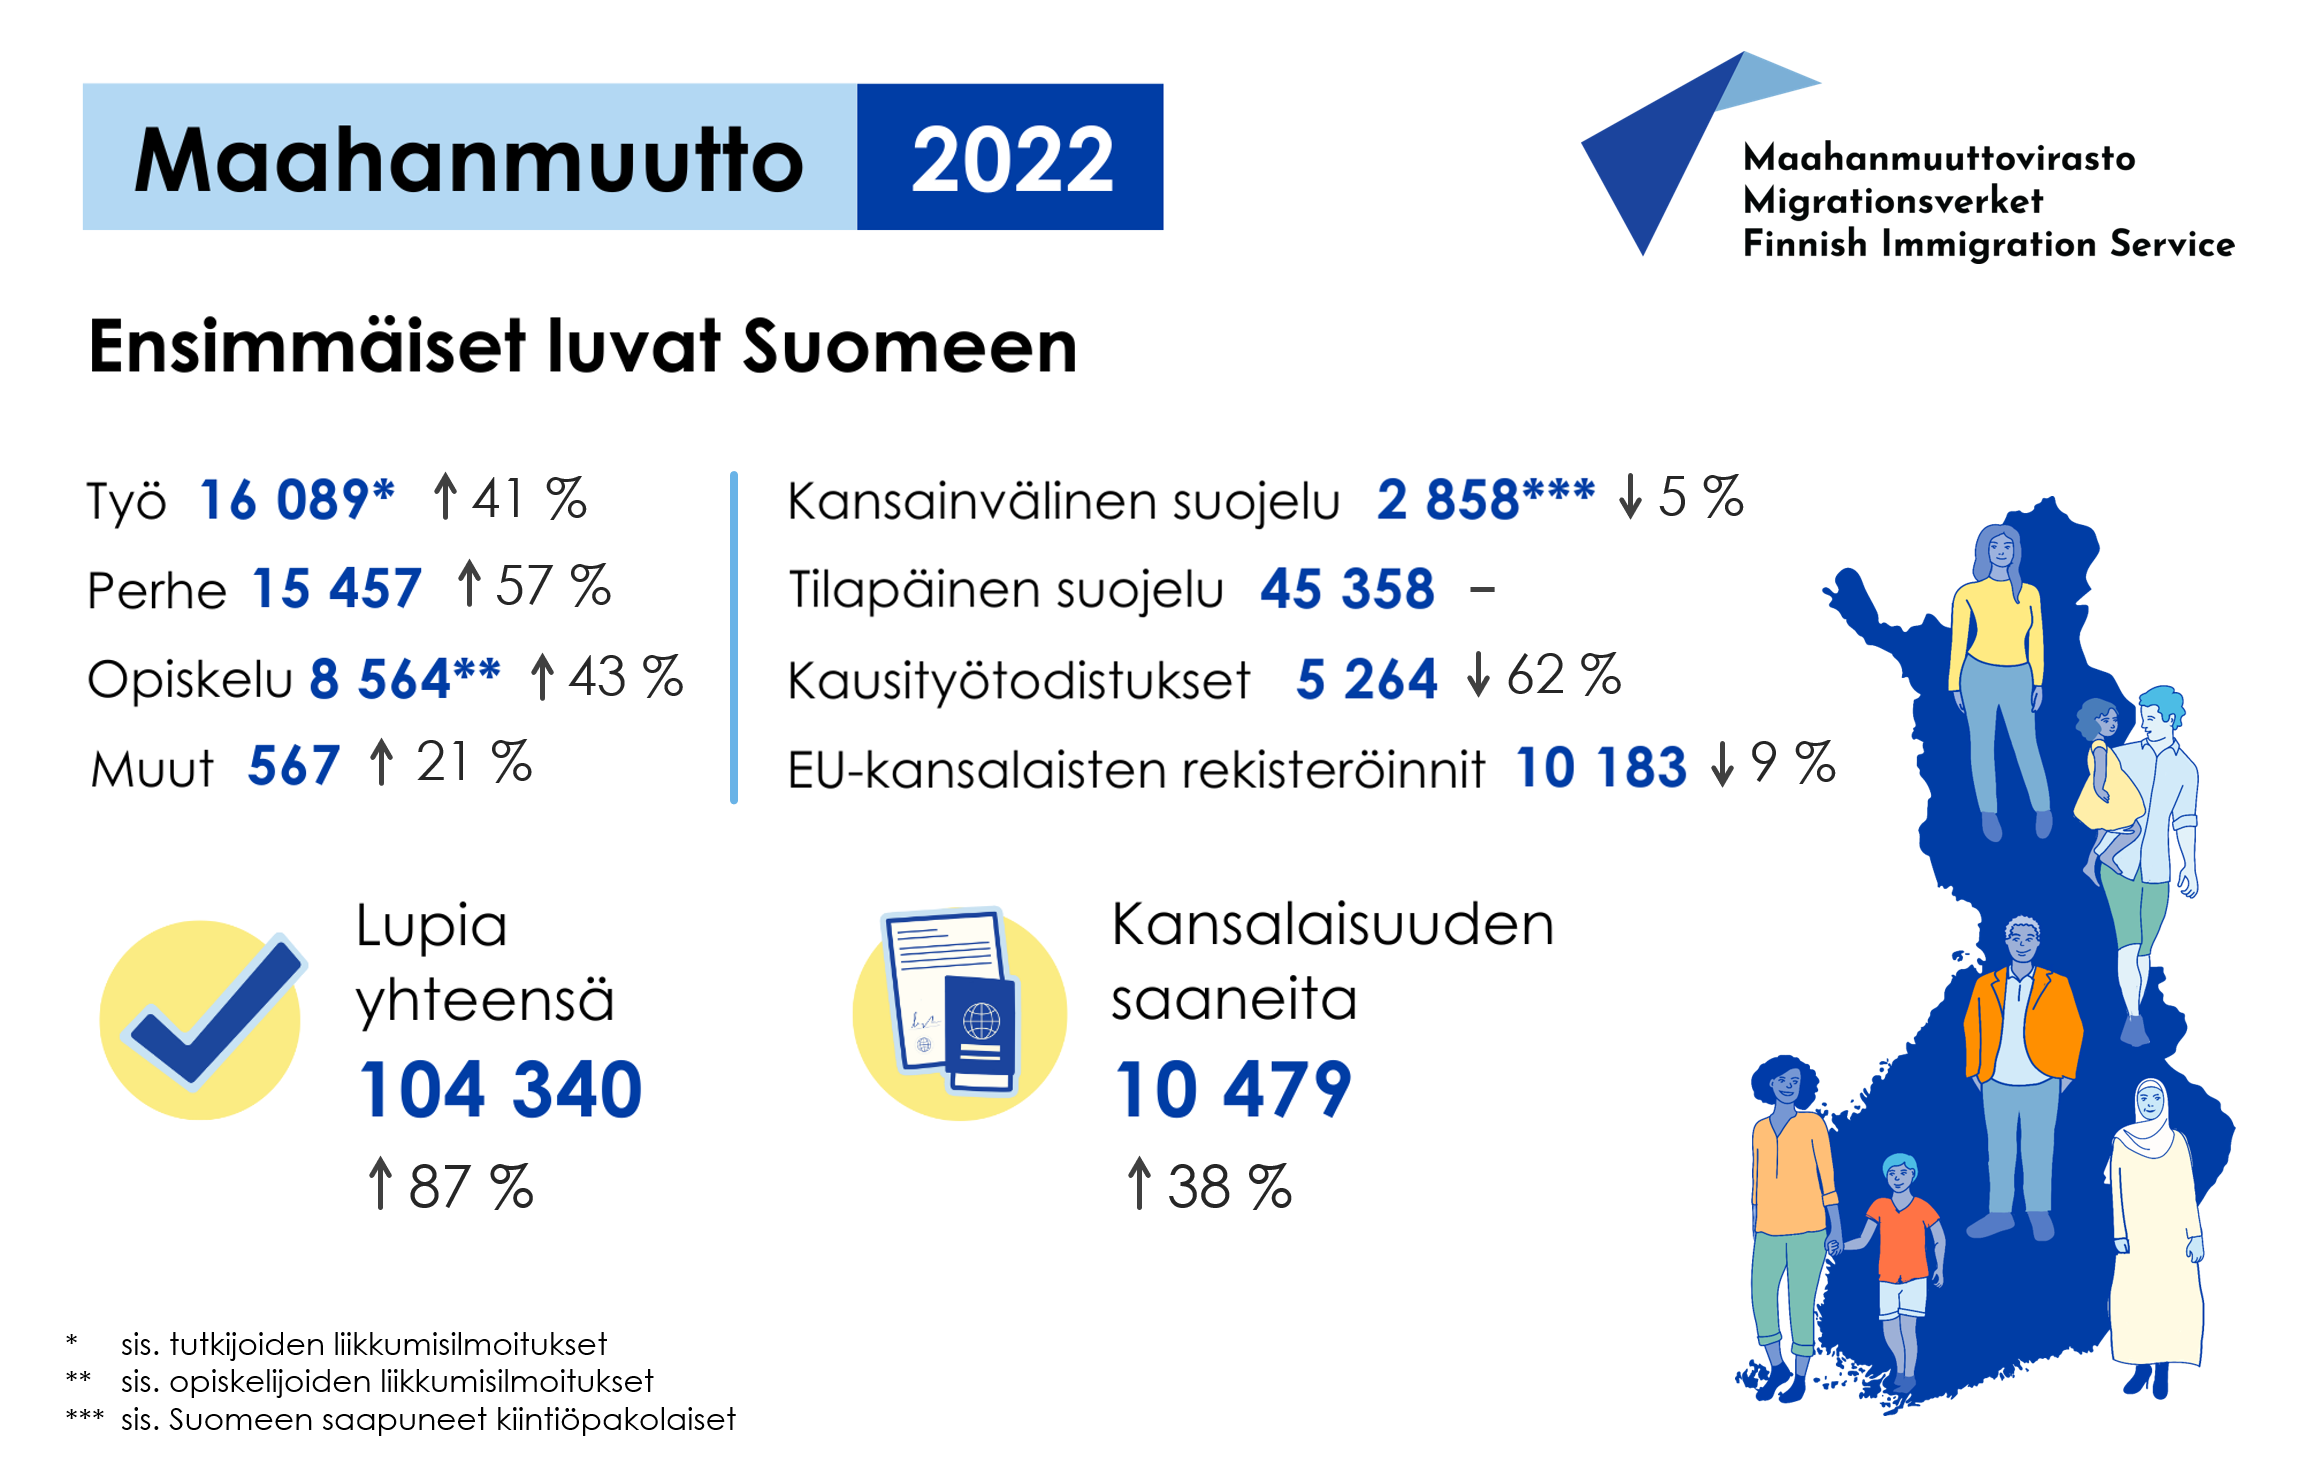 Infografiikka: maahanmuutto 2022, ensimmäiset luvat Suomeen. Työ (sis. tutkijoiden liikkumisilmoitukset): 16089, -41 %. Perhe: 15457, + 57 %. Opiskelu 8564 (sis. opiskelijoiden liikkumisilmoitukset), + 43 %. Muut: 567, + 21 %. Kansainvälinen suojelu (sis. Suomeen saapuneet kiintiöpakolaiset): 2858, - 5 %. Tilapäinen suojelu: 45358, Kausityötodistukset: 5264, - 62 %. EU-kansalaisten rekisteröinnit: 10183, - 9 %. Lupia yhteensä: 104340, + 87 %. Kansalaisuuden saaneita: 10479, + 38 %.